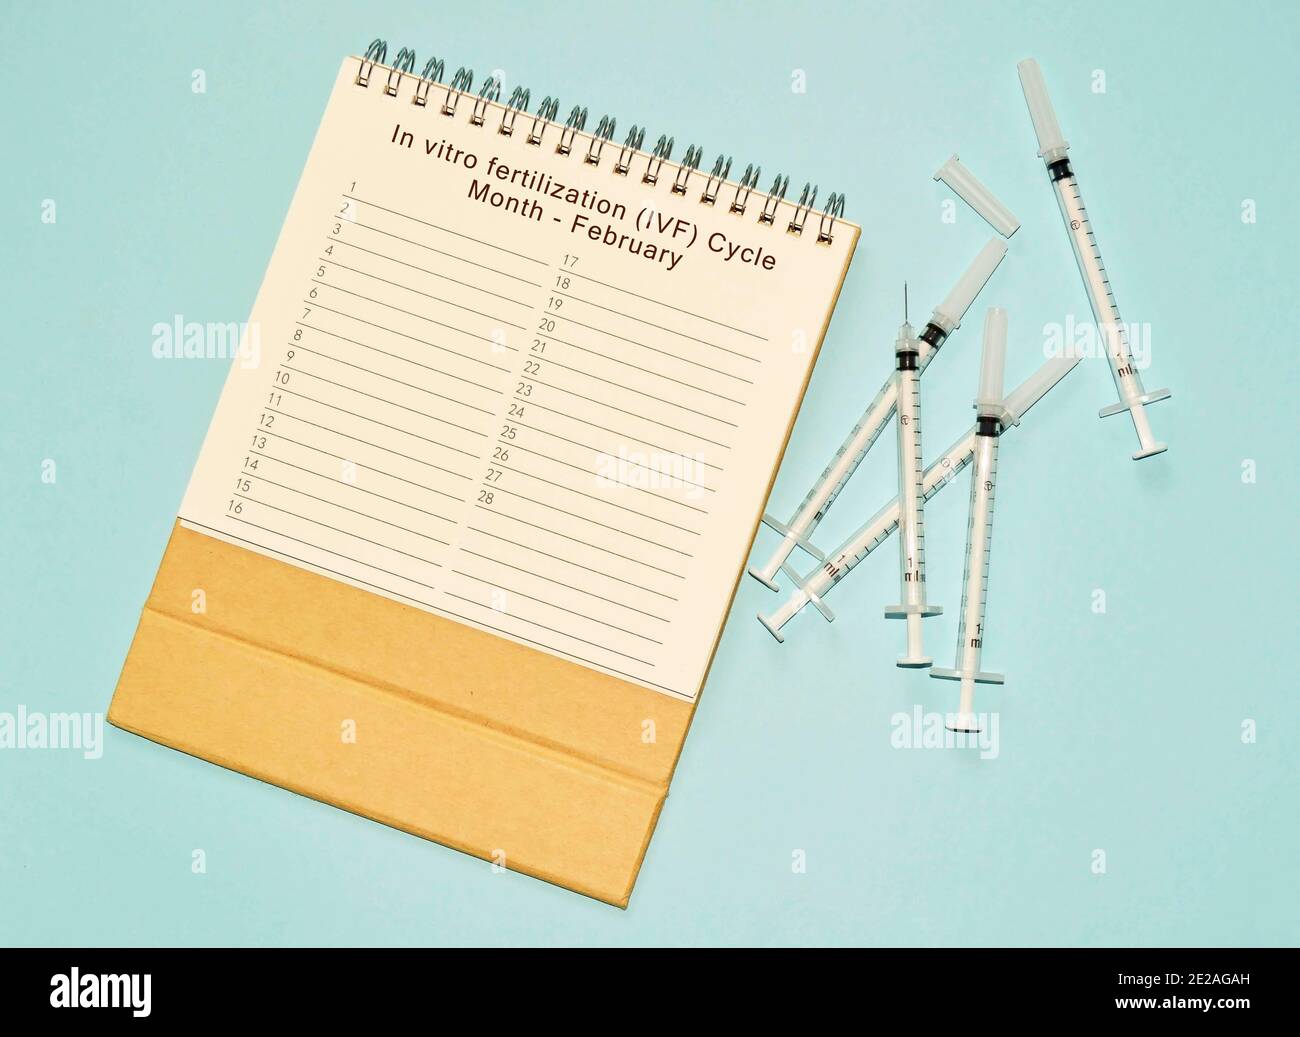 Februar IVF Zyklus Kalender und Einweg-Injektionsspritze auf blau Hintergrund Stockfoto